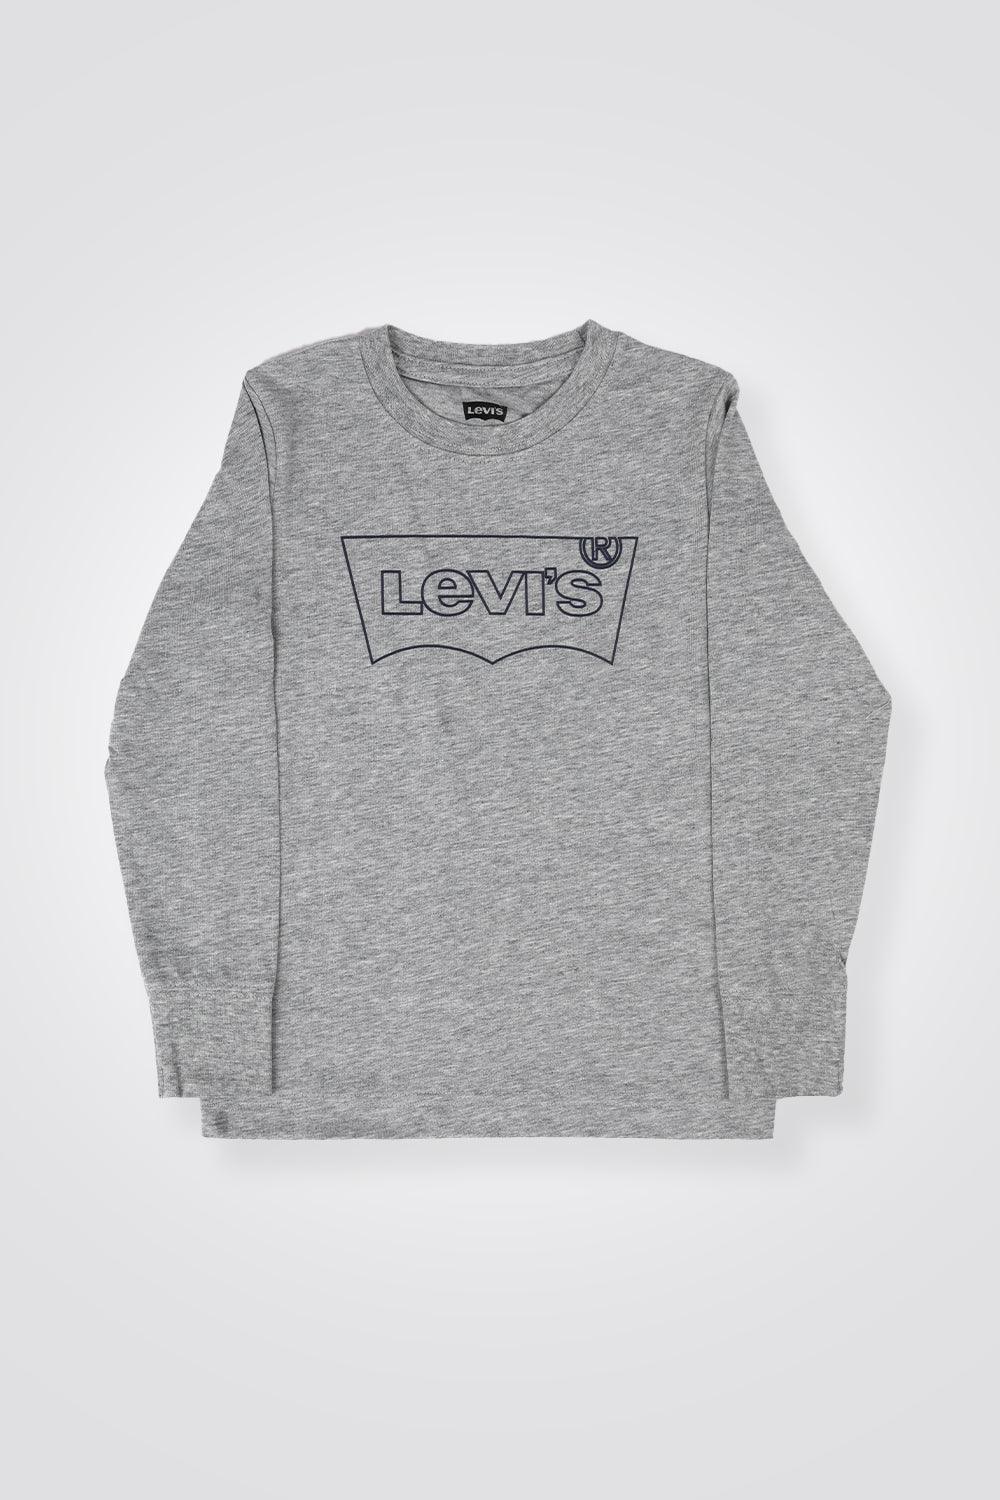 LEVI'S - חולצה שרוול ארוך LEVI'S אפור בהדפס לוגו כחול לילדים - MASHBIR//365